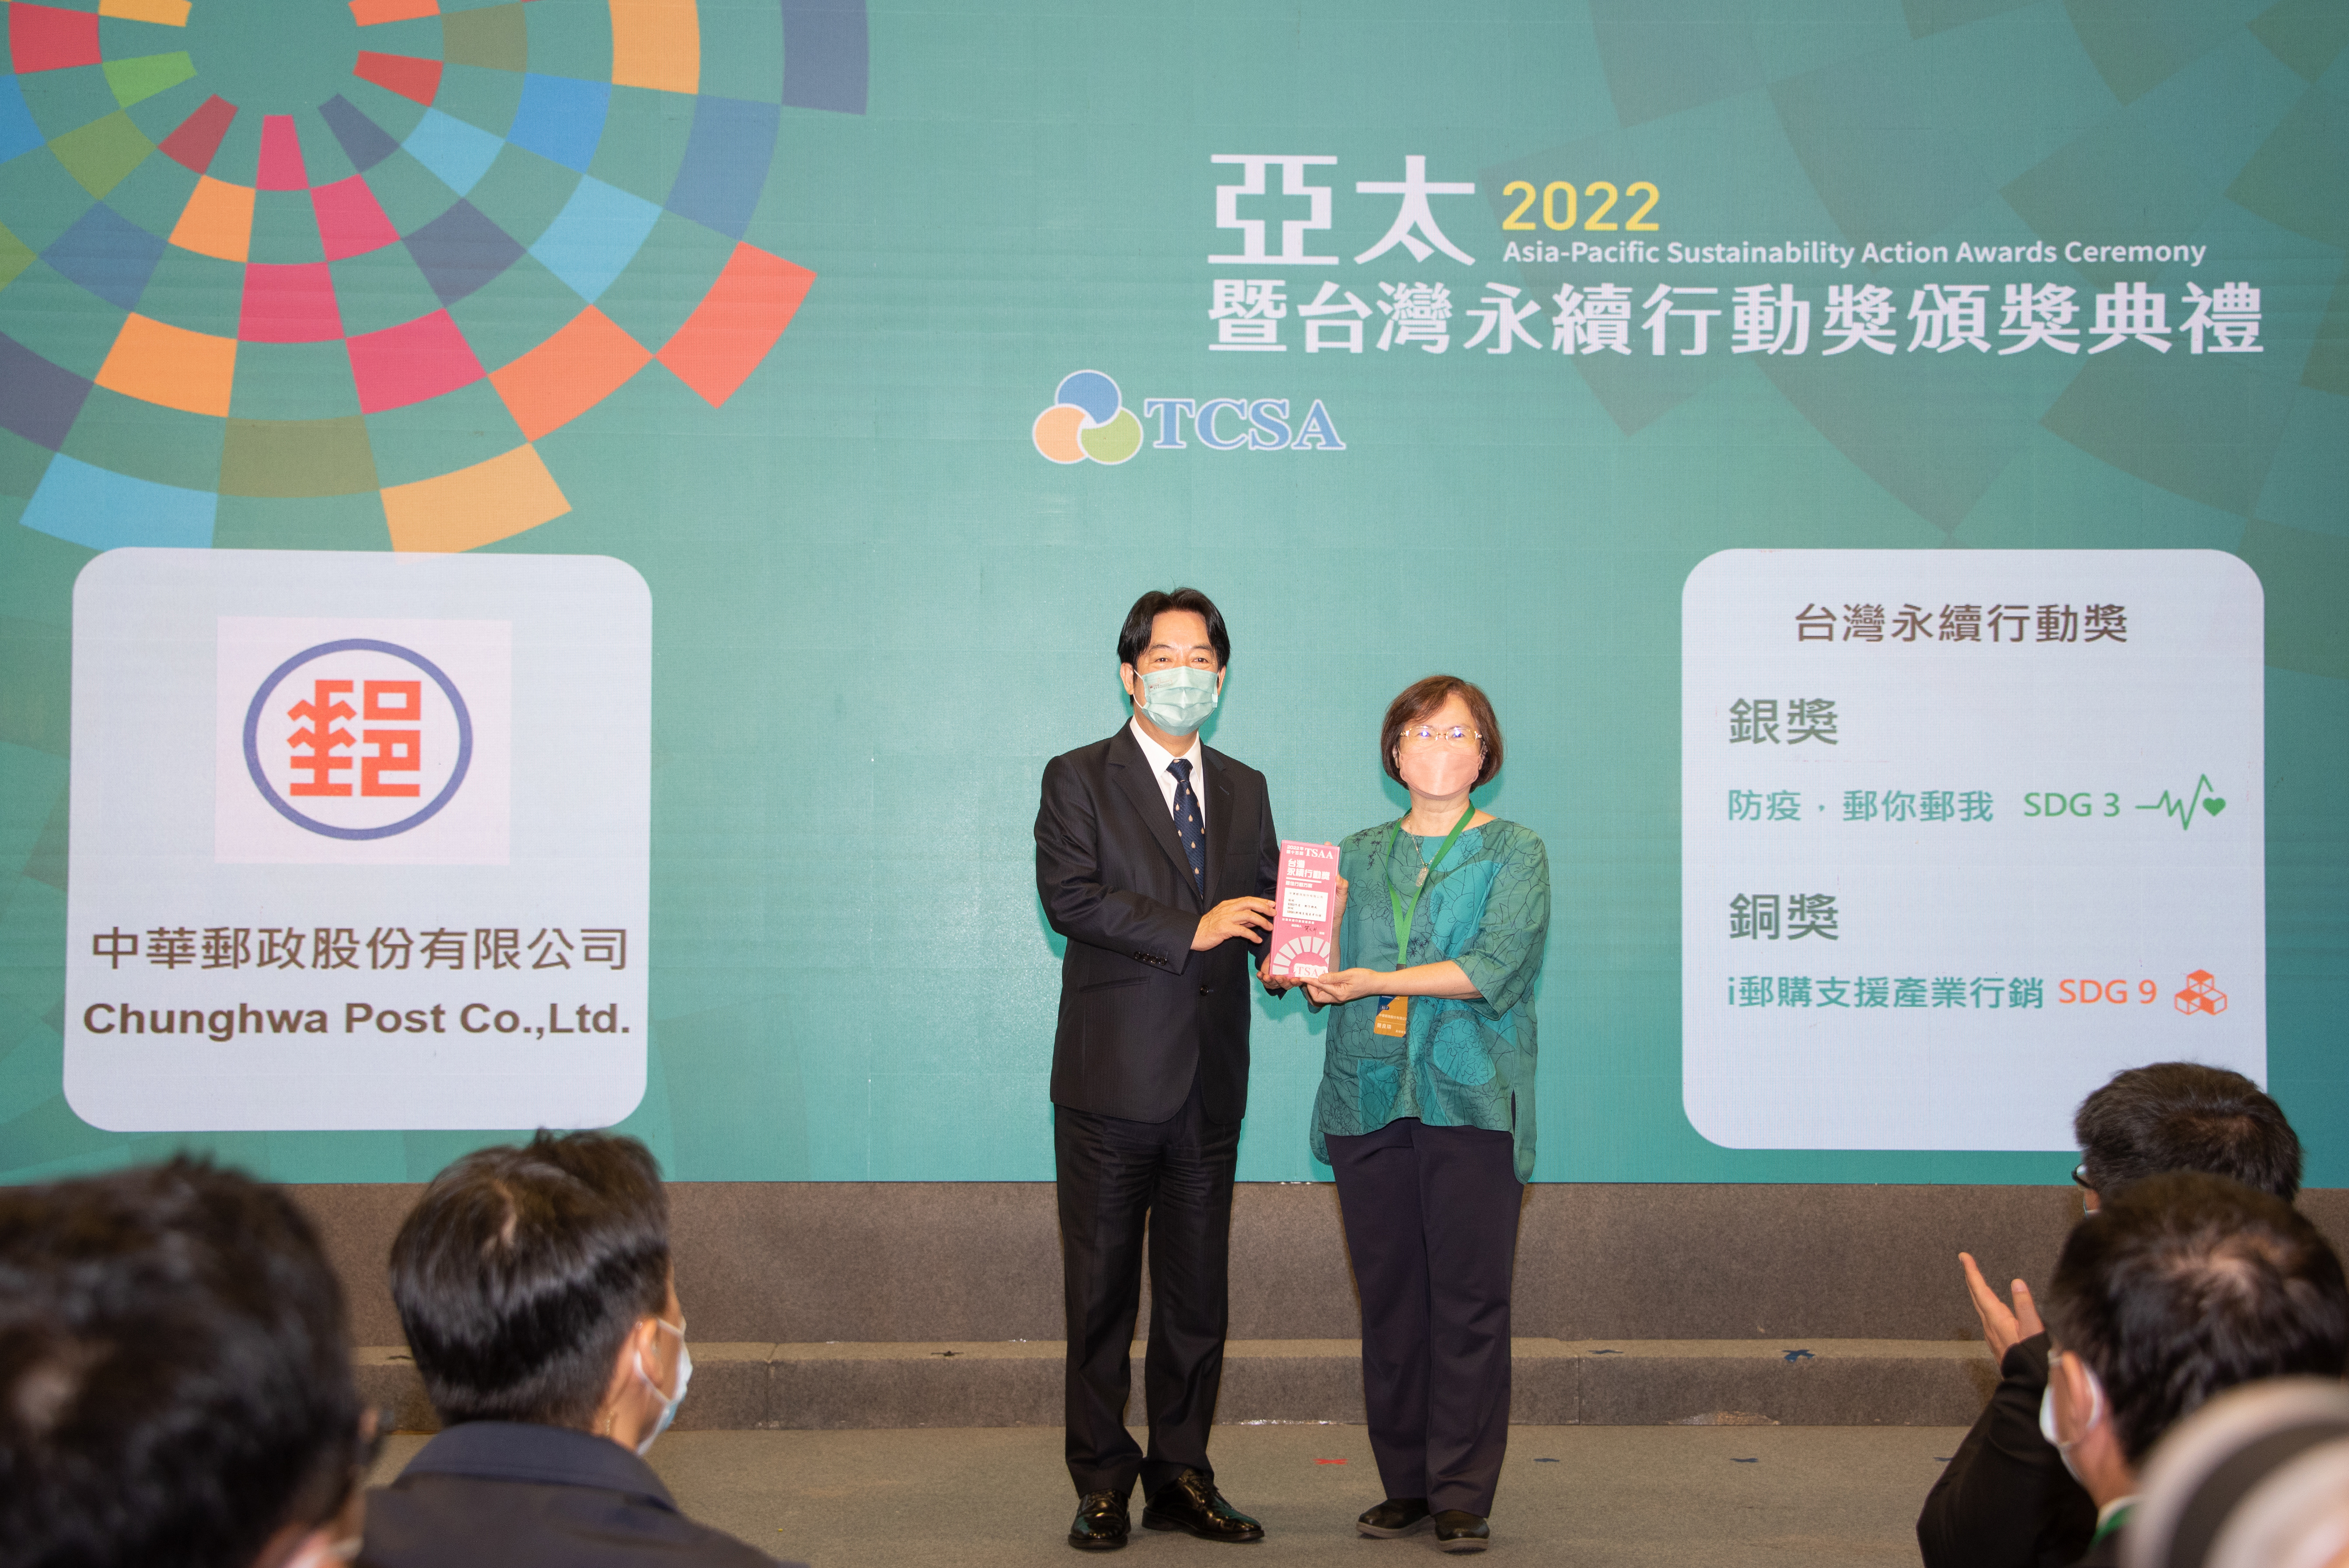 中華郵政深耕ESG永續經營理念 獲頒台灣永續行動獎雙項殊榮